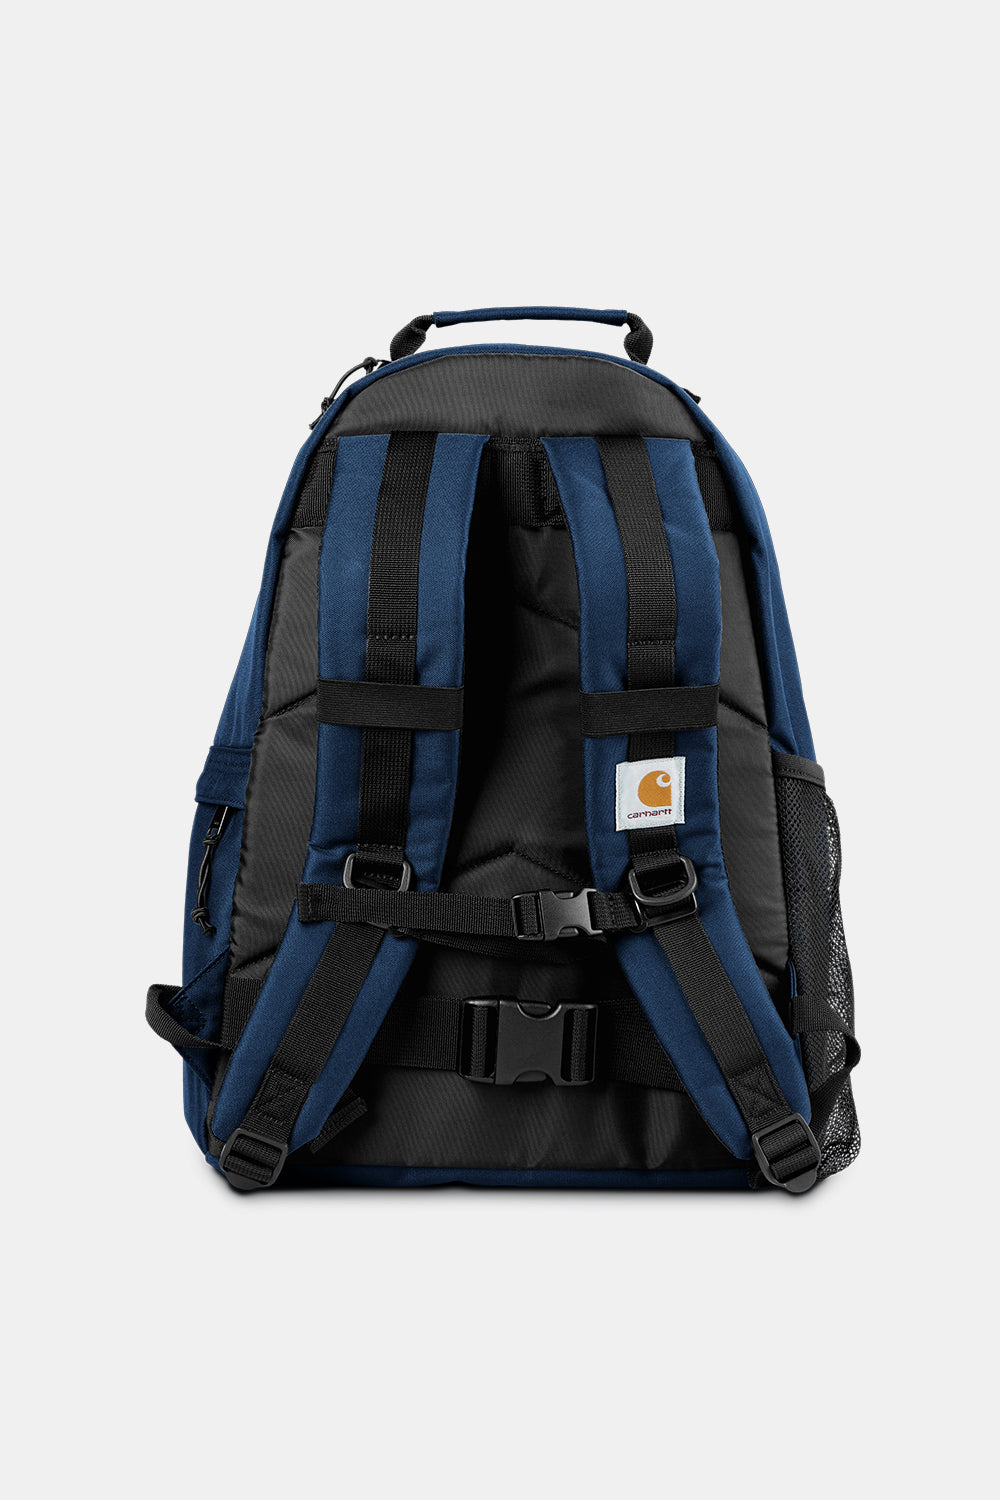 Carhartt WIP Kickflip Backpack (Elder Blue)